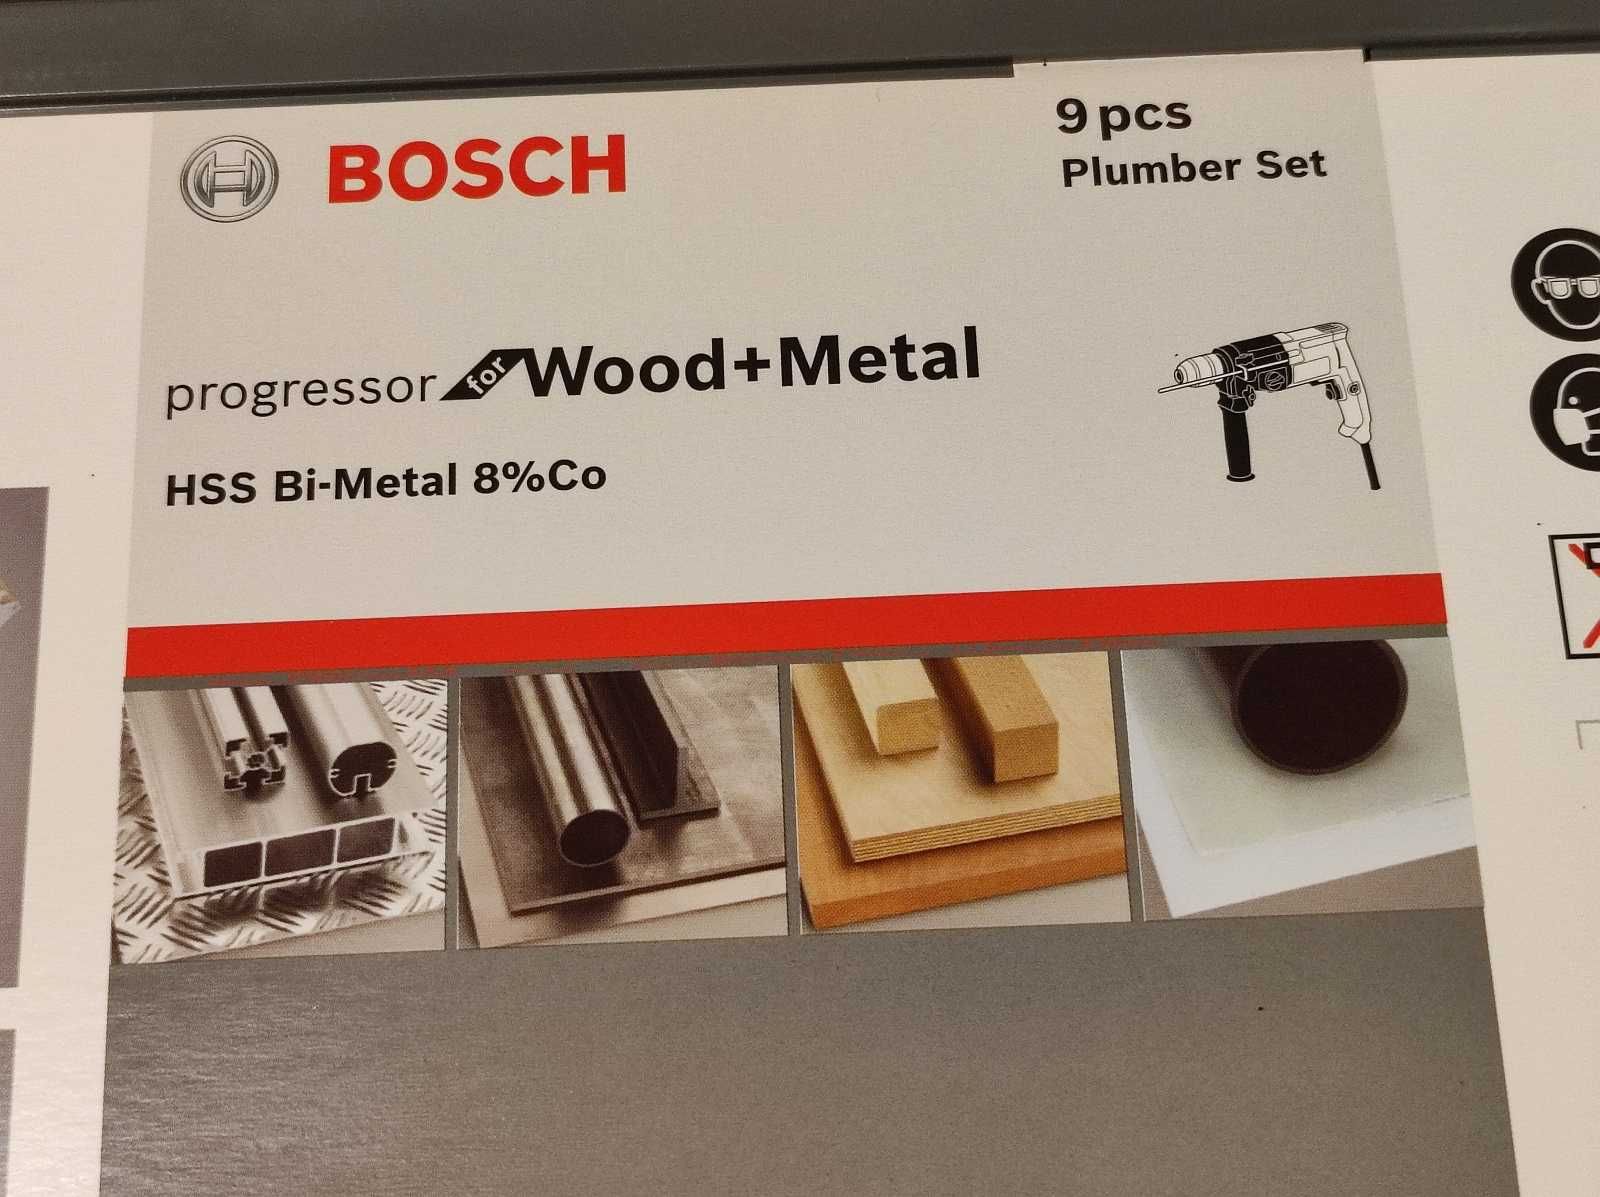 Zestaw otwornic 9 częściowy - Bosch Progressor Wood + Metal - nowy